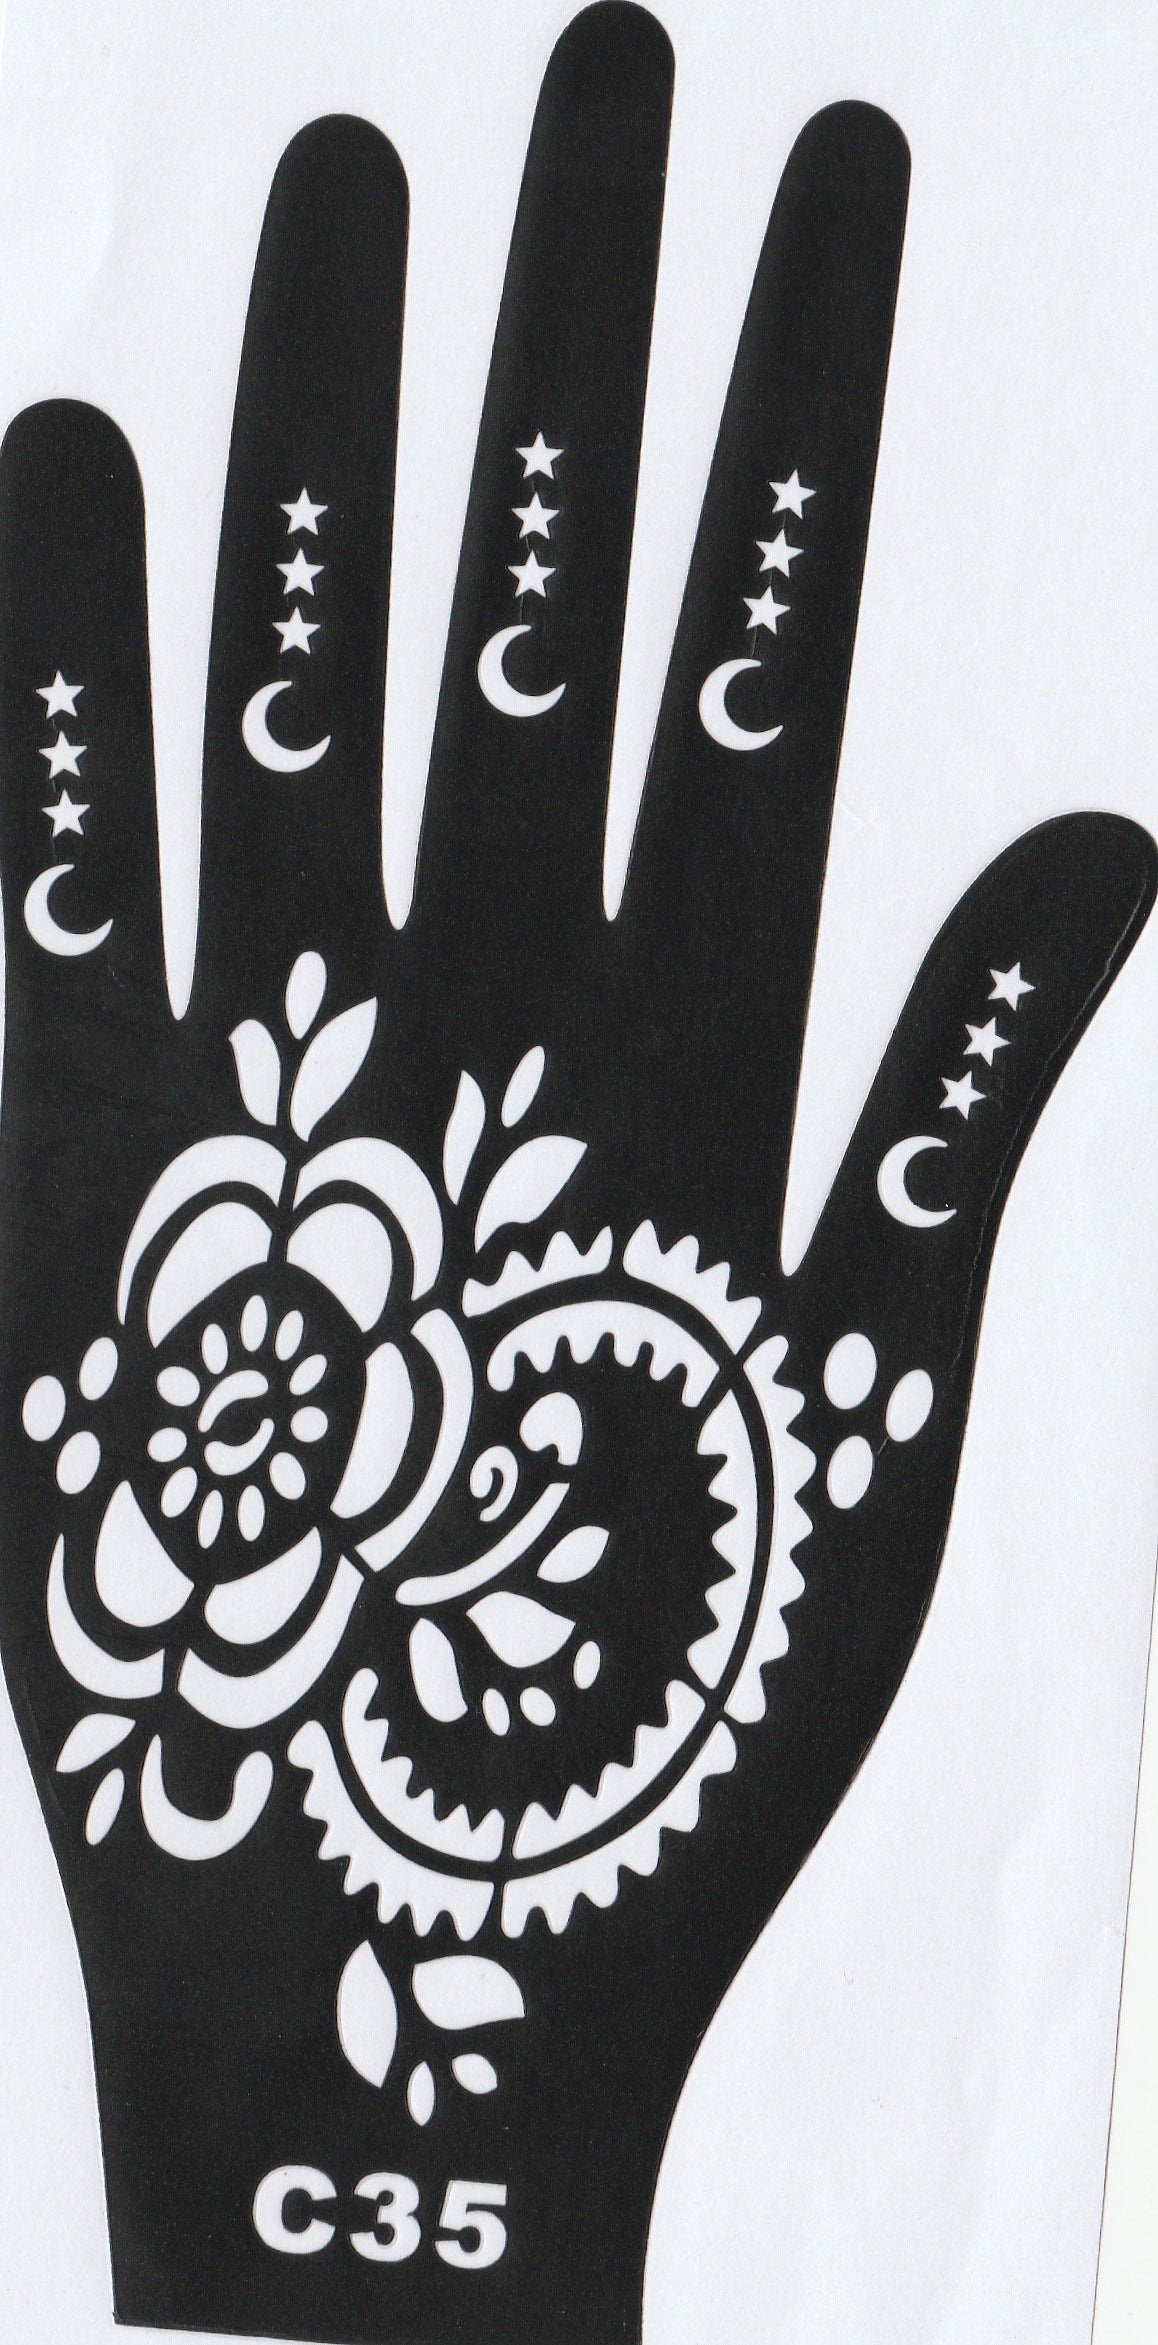 Beautiful Henna Stencils - Both Hands/ Mehendi Designs/ Mehendi DIY Stencil - C35